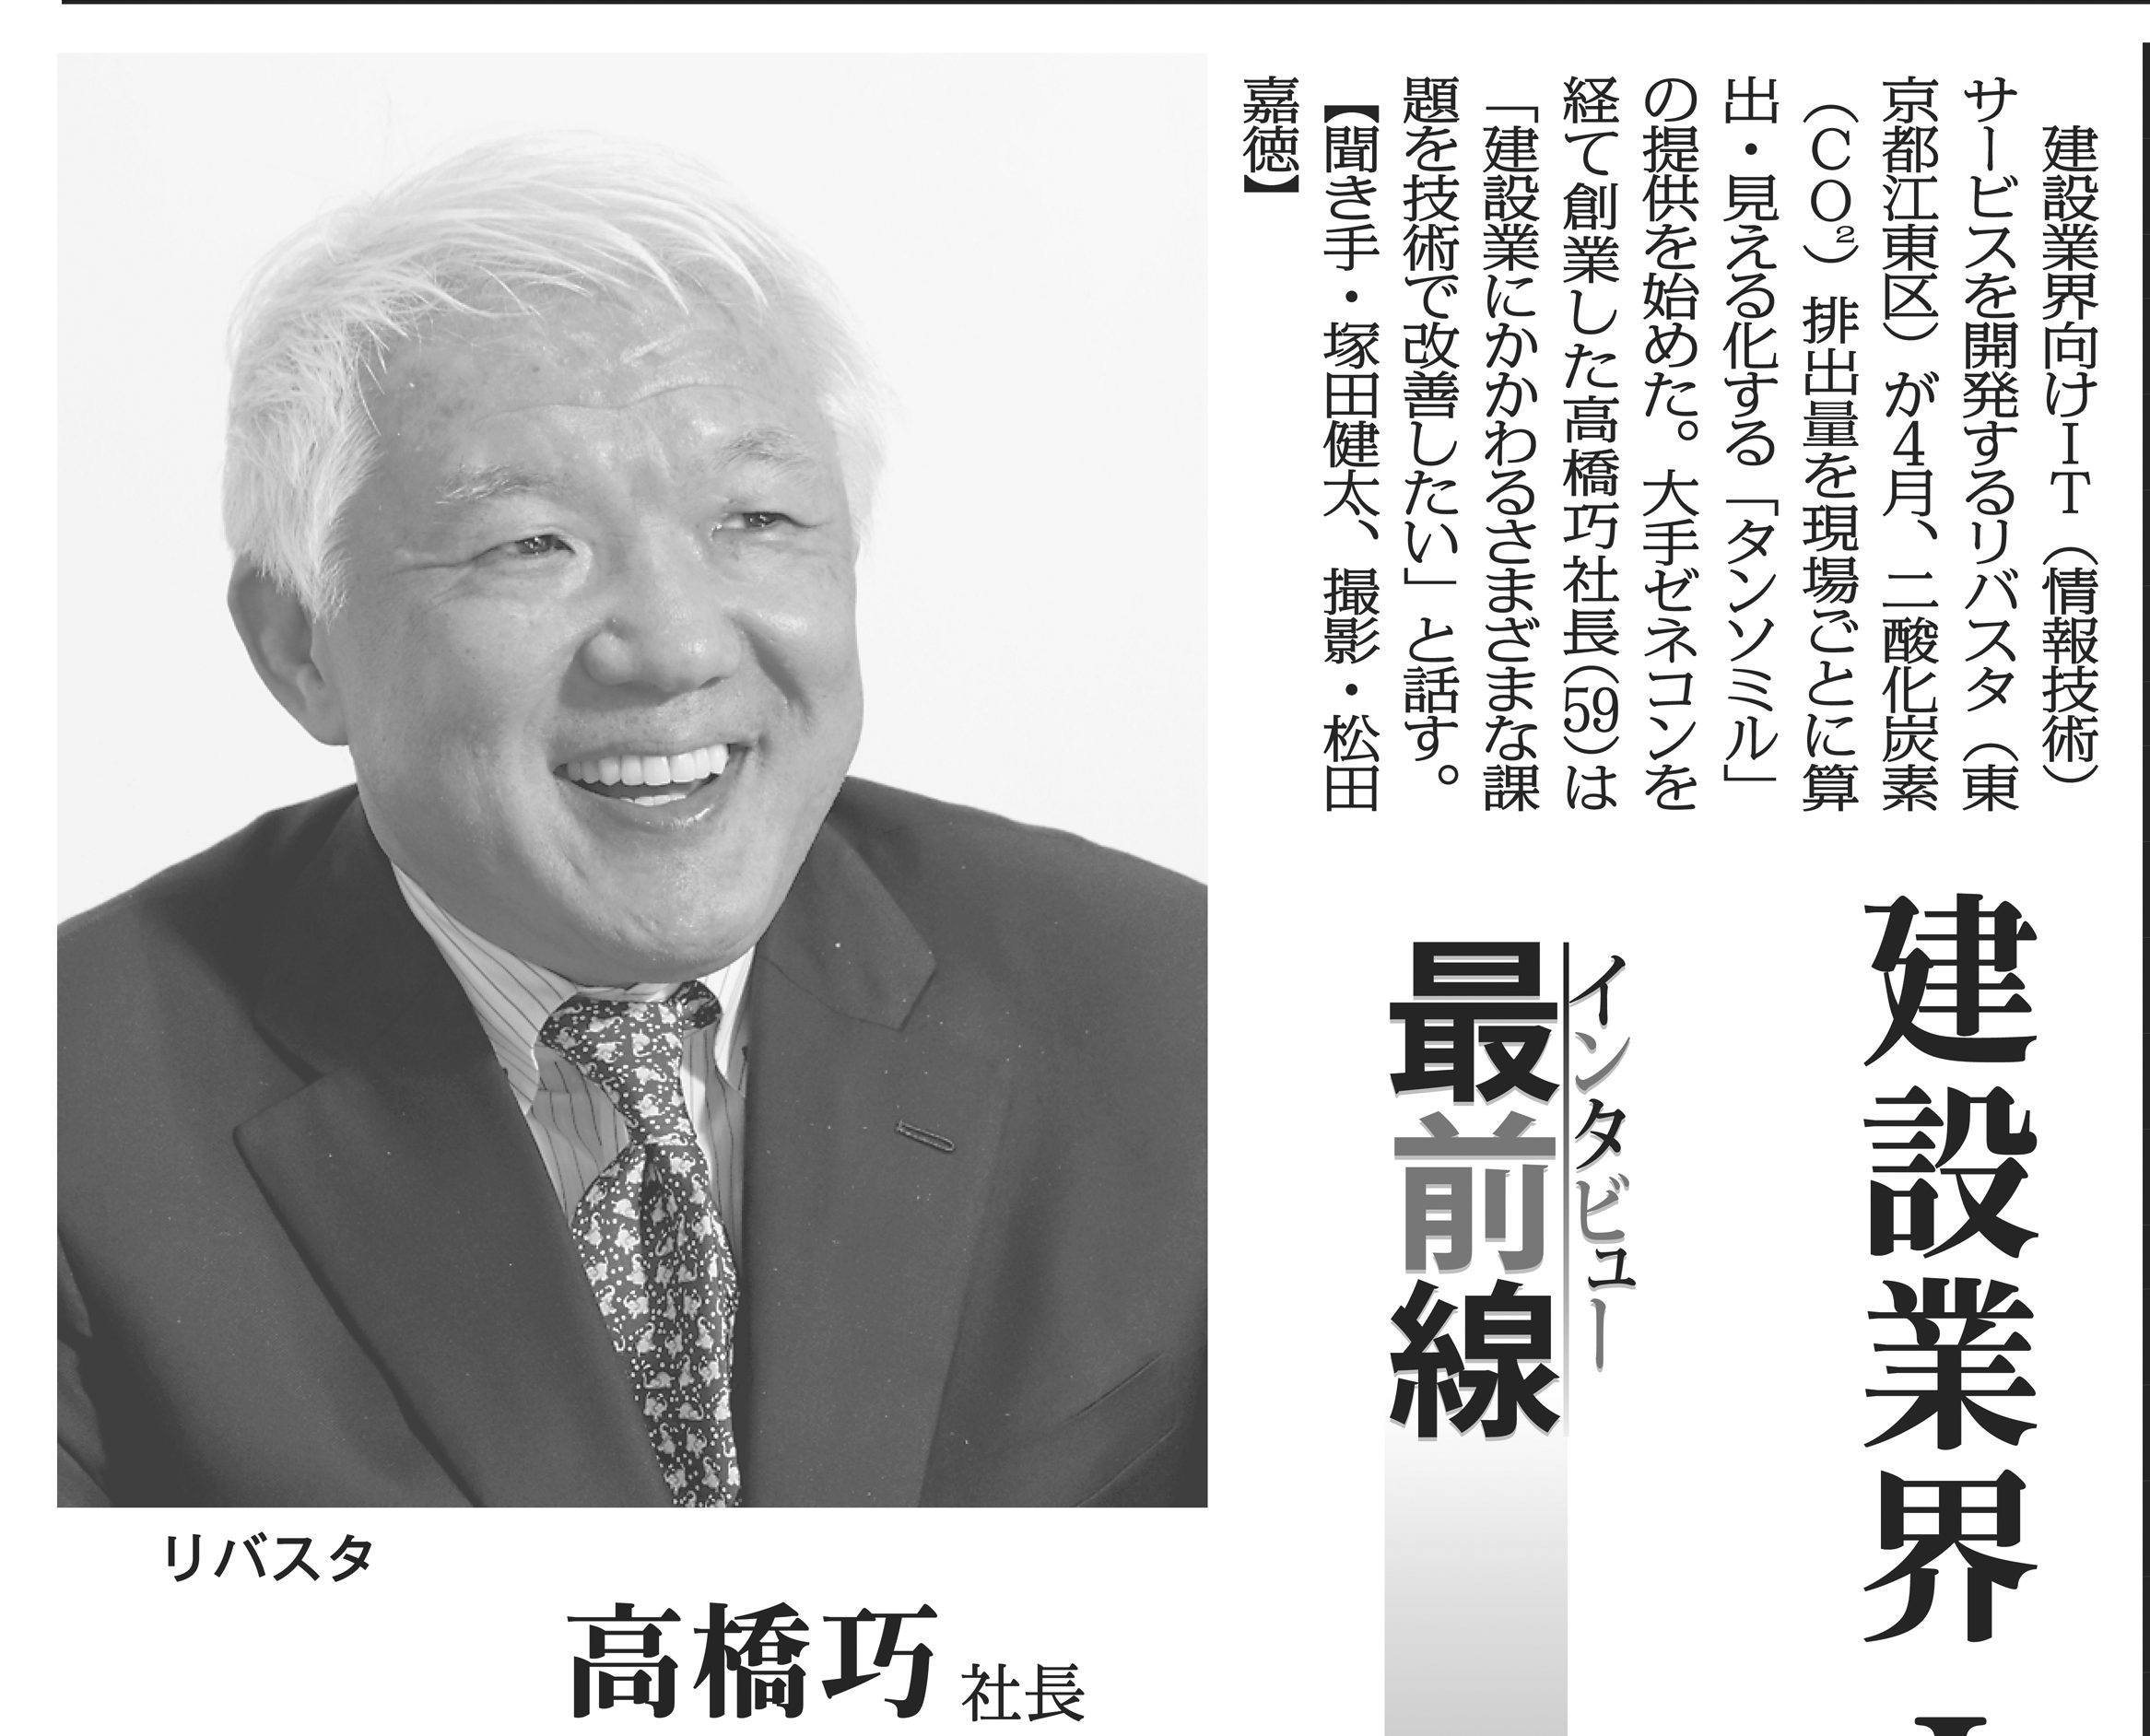 毎日新聞にて、当社代表 高橋のインタビュー記事を掲載いただきました。